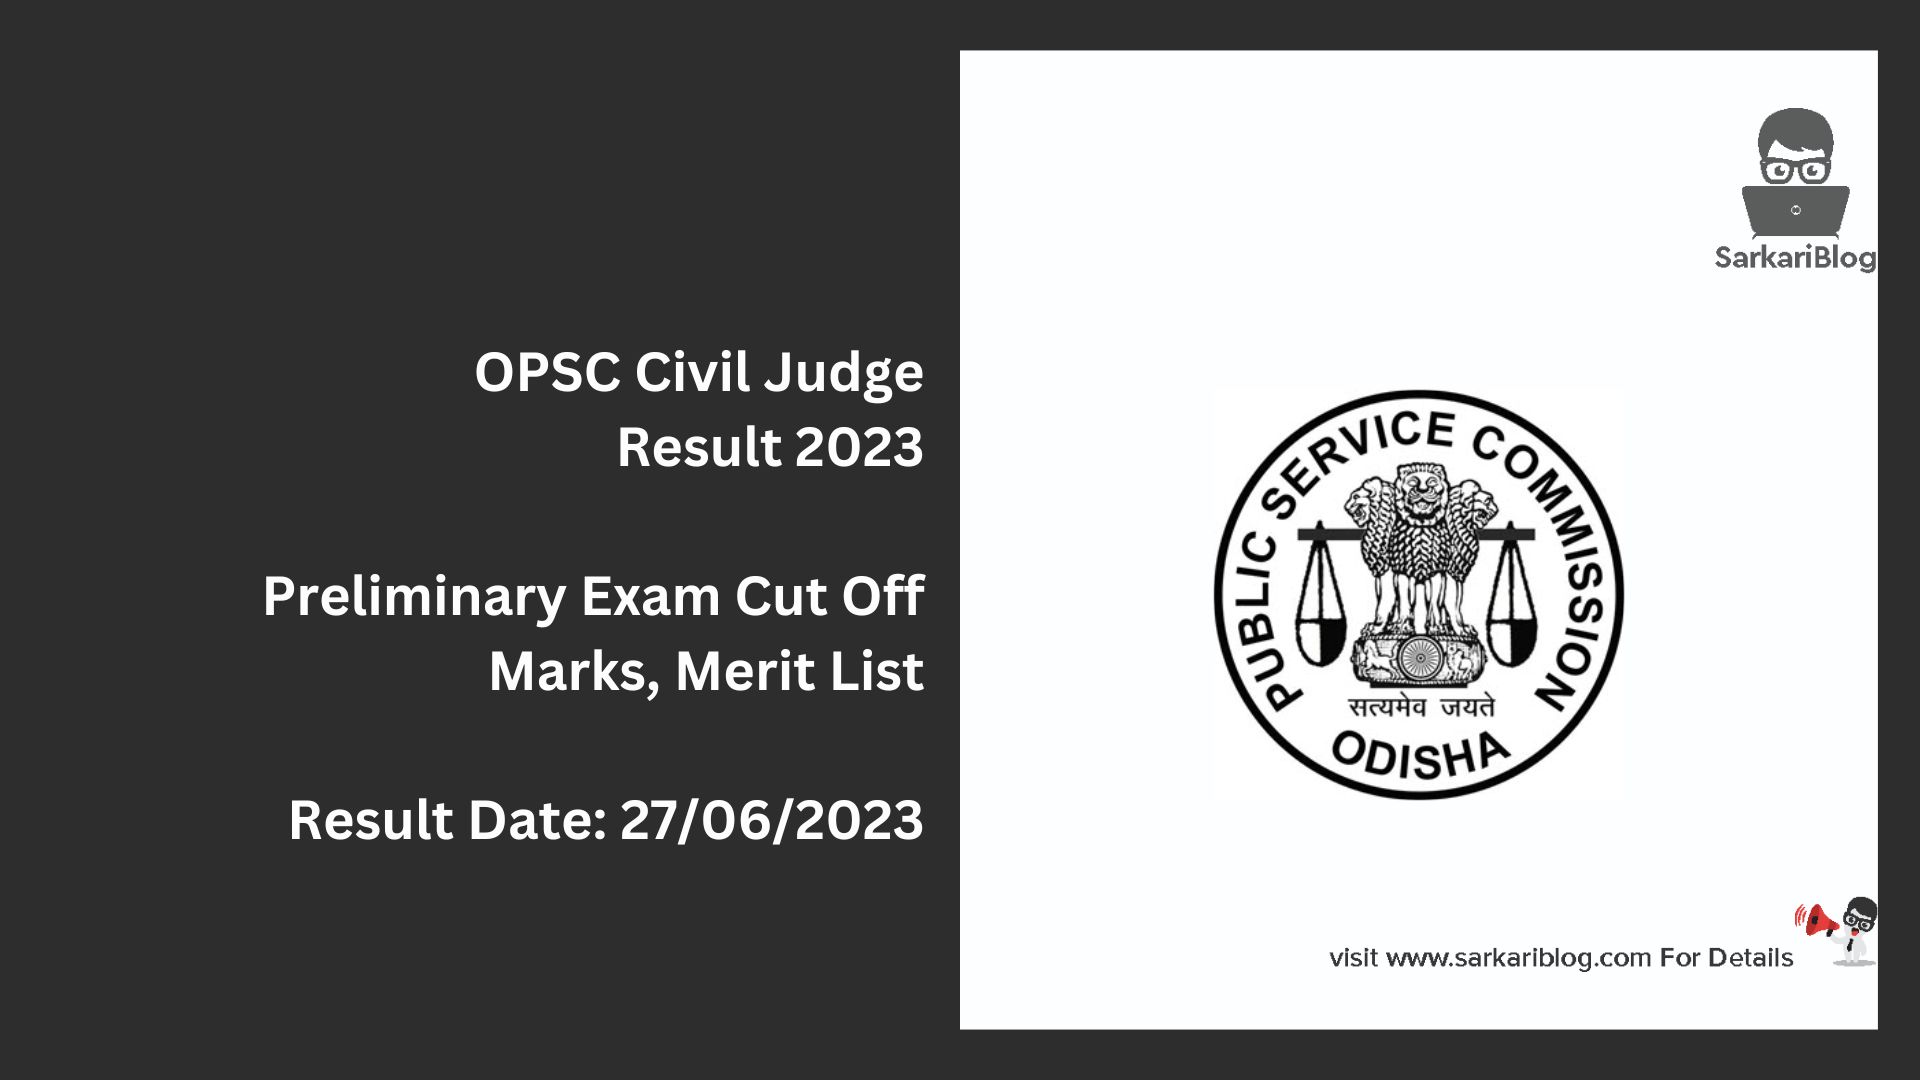 OPSC Civil Judge Result 2023